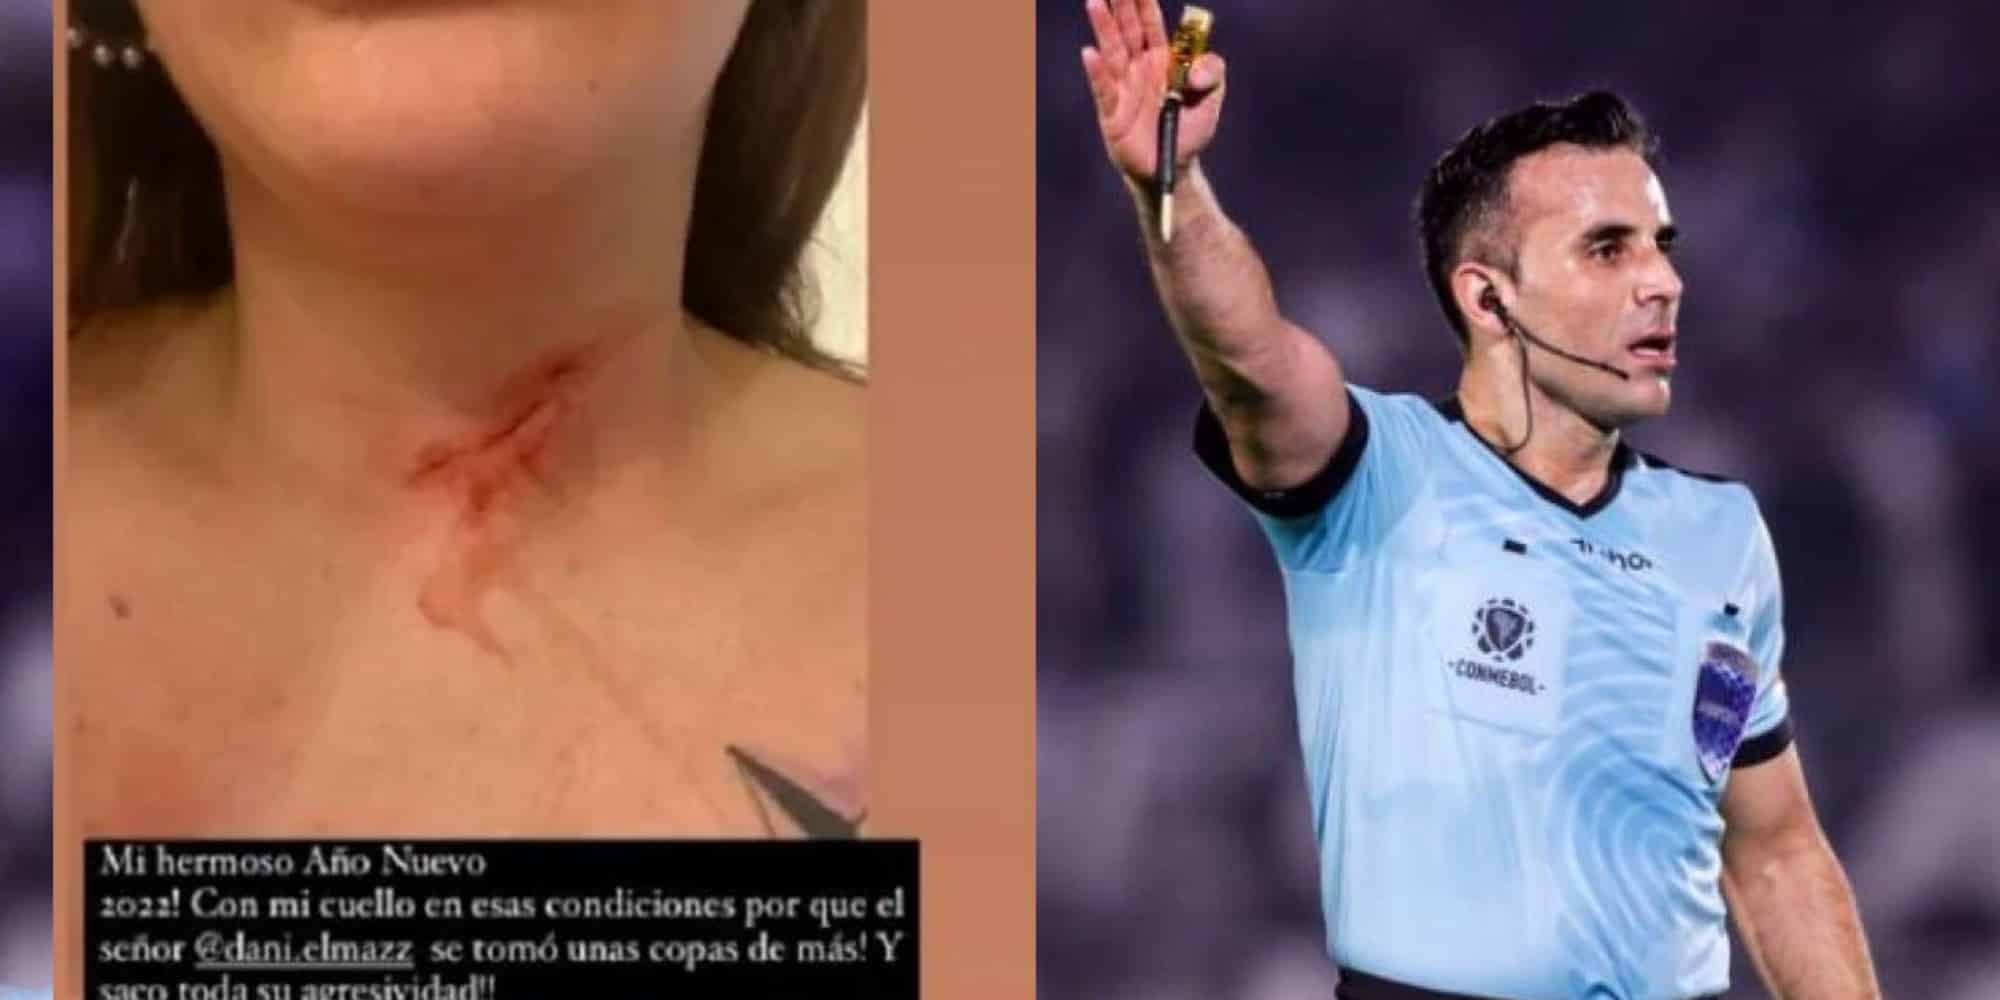 Εικόνα από την τραυματισμένη γυναίκα και ο διαιτητής από την Χιλή που κατηγορείται για ξυλοδαρμό